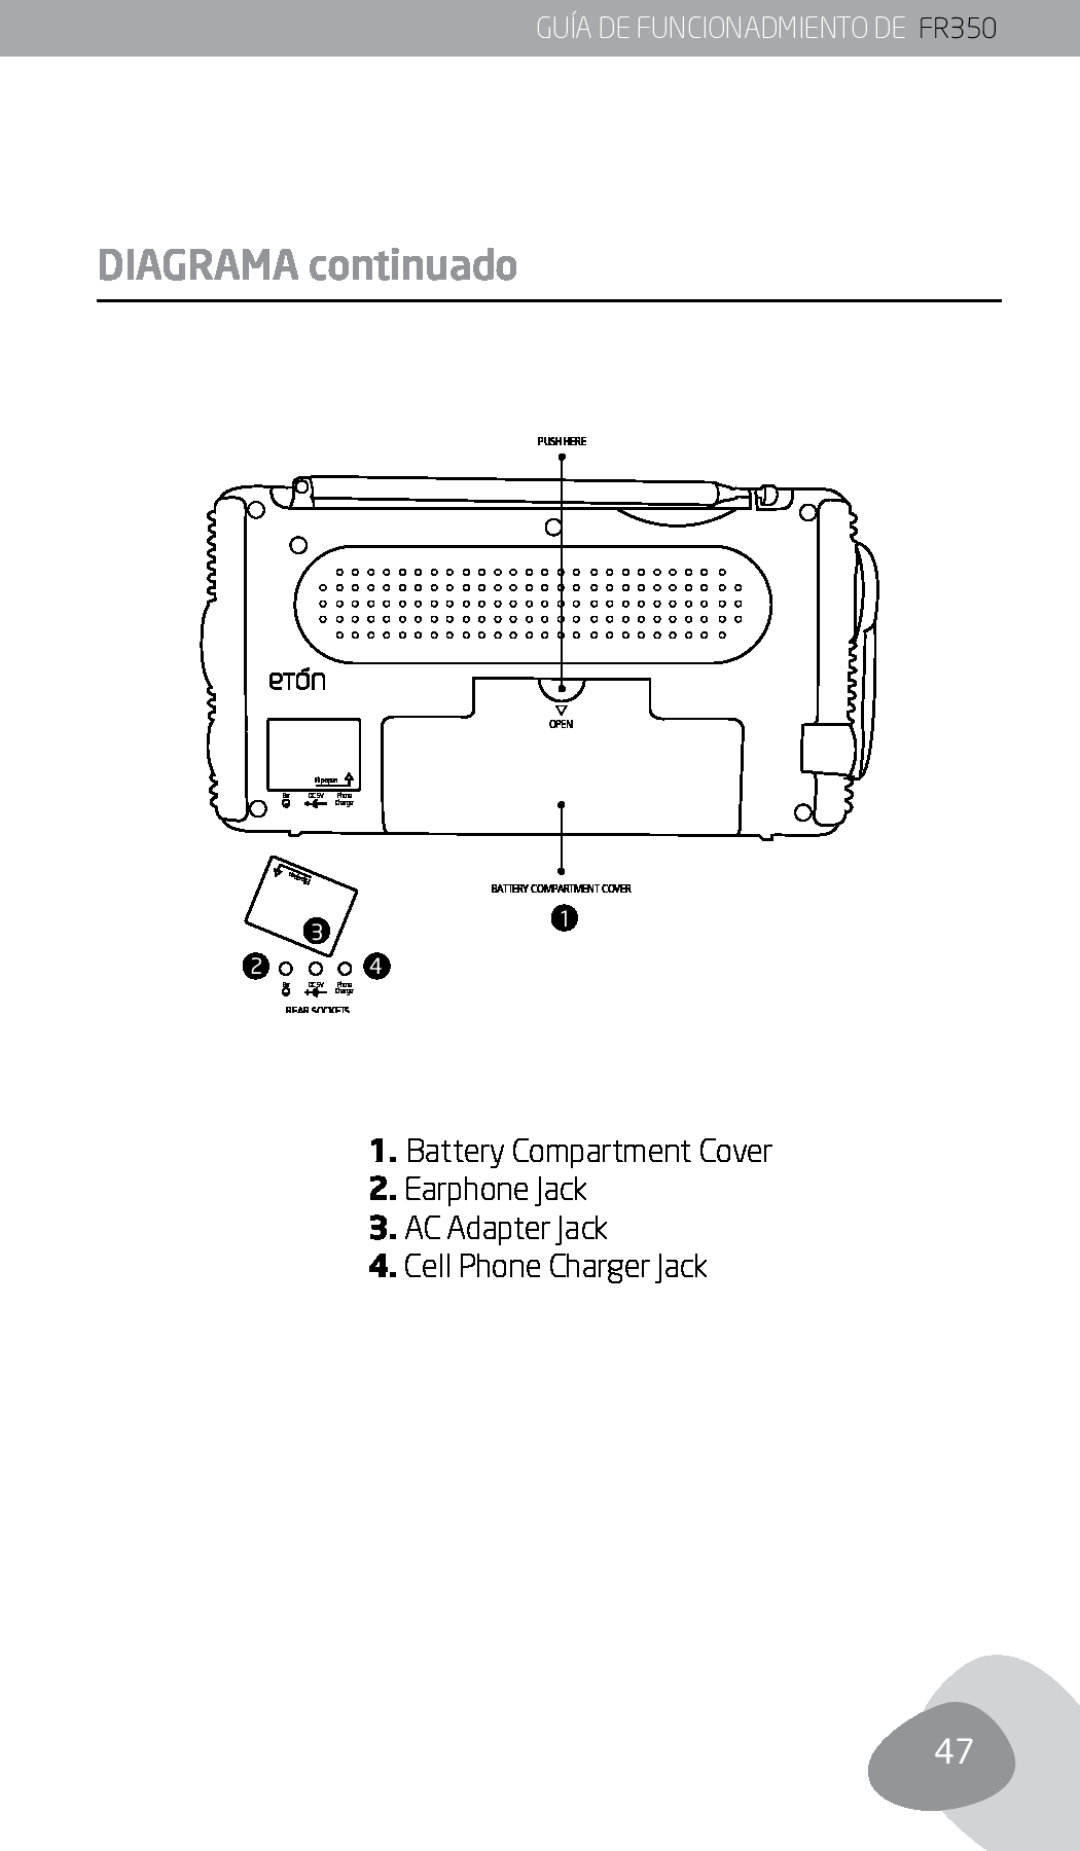 Eton Diagrama continuado, GUÍA DE FUNCIONADMIENTO DE FR350, Push Here Open, Battery Compartment Cover, Rear Sockets 